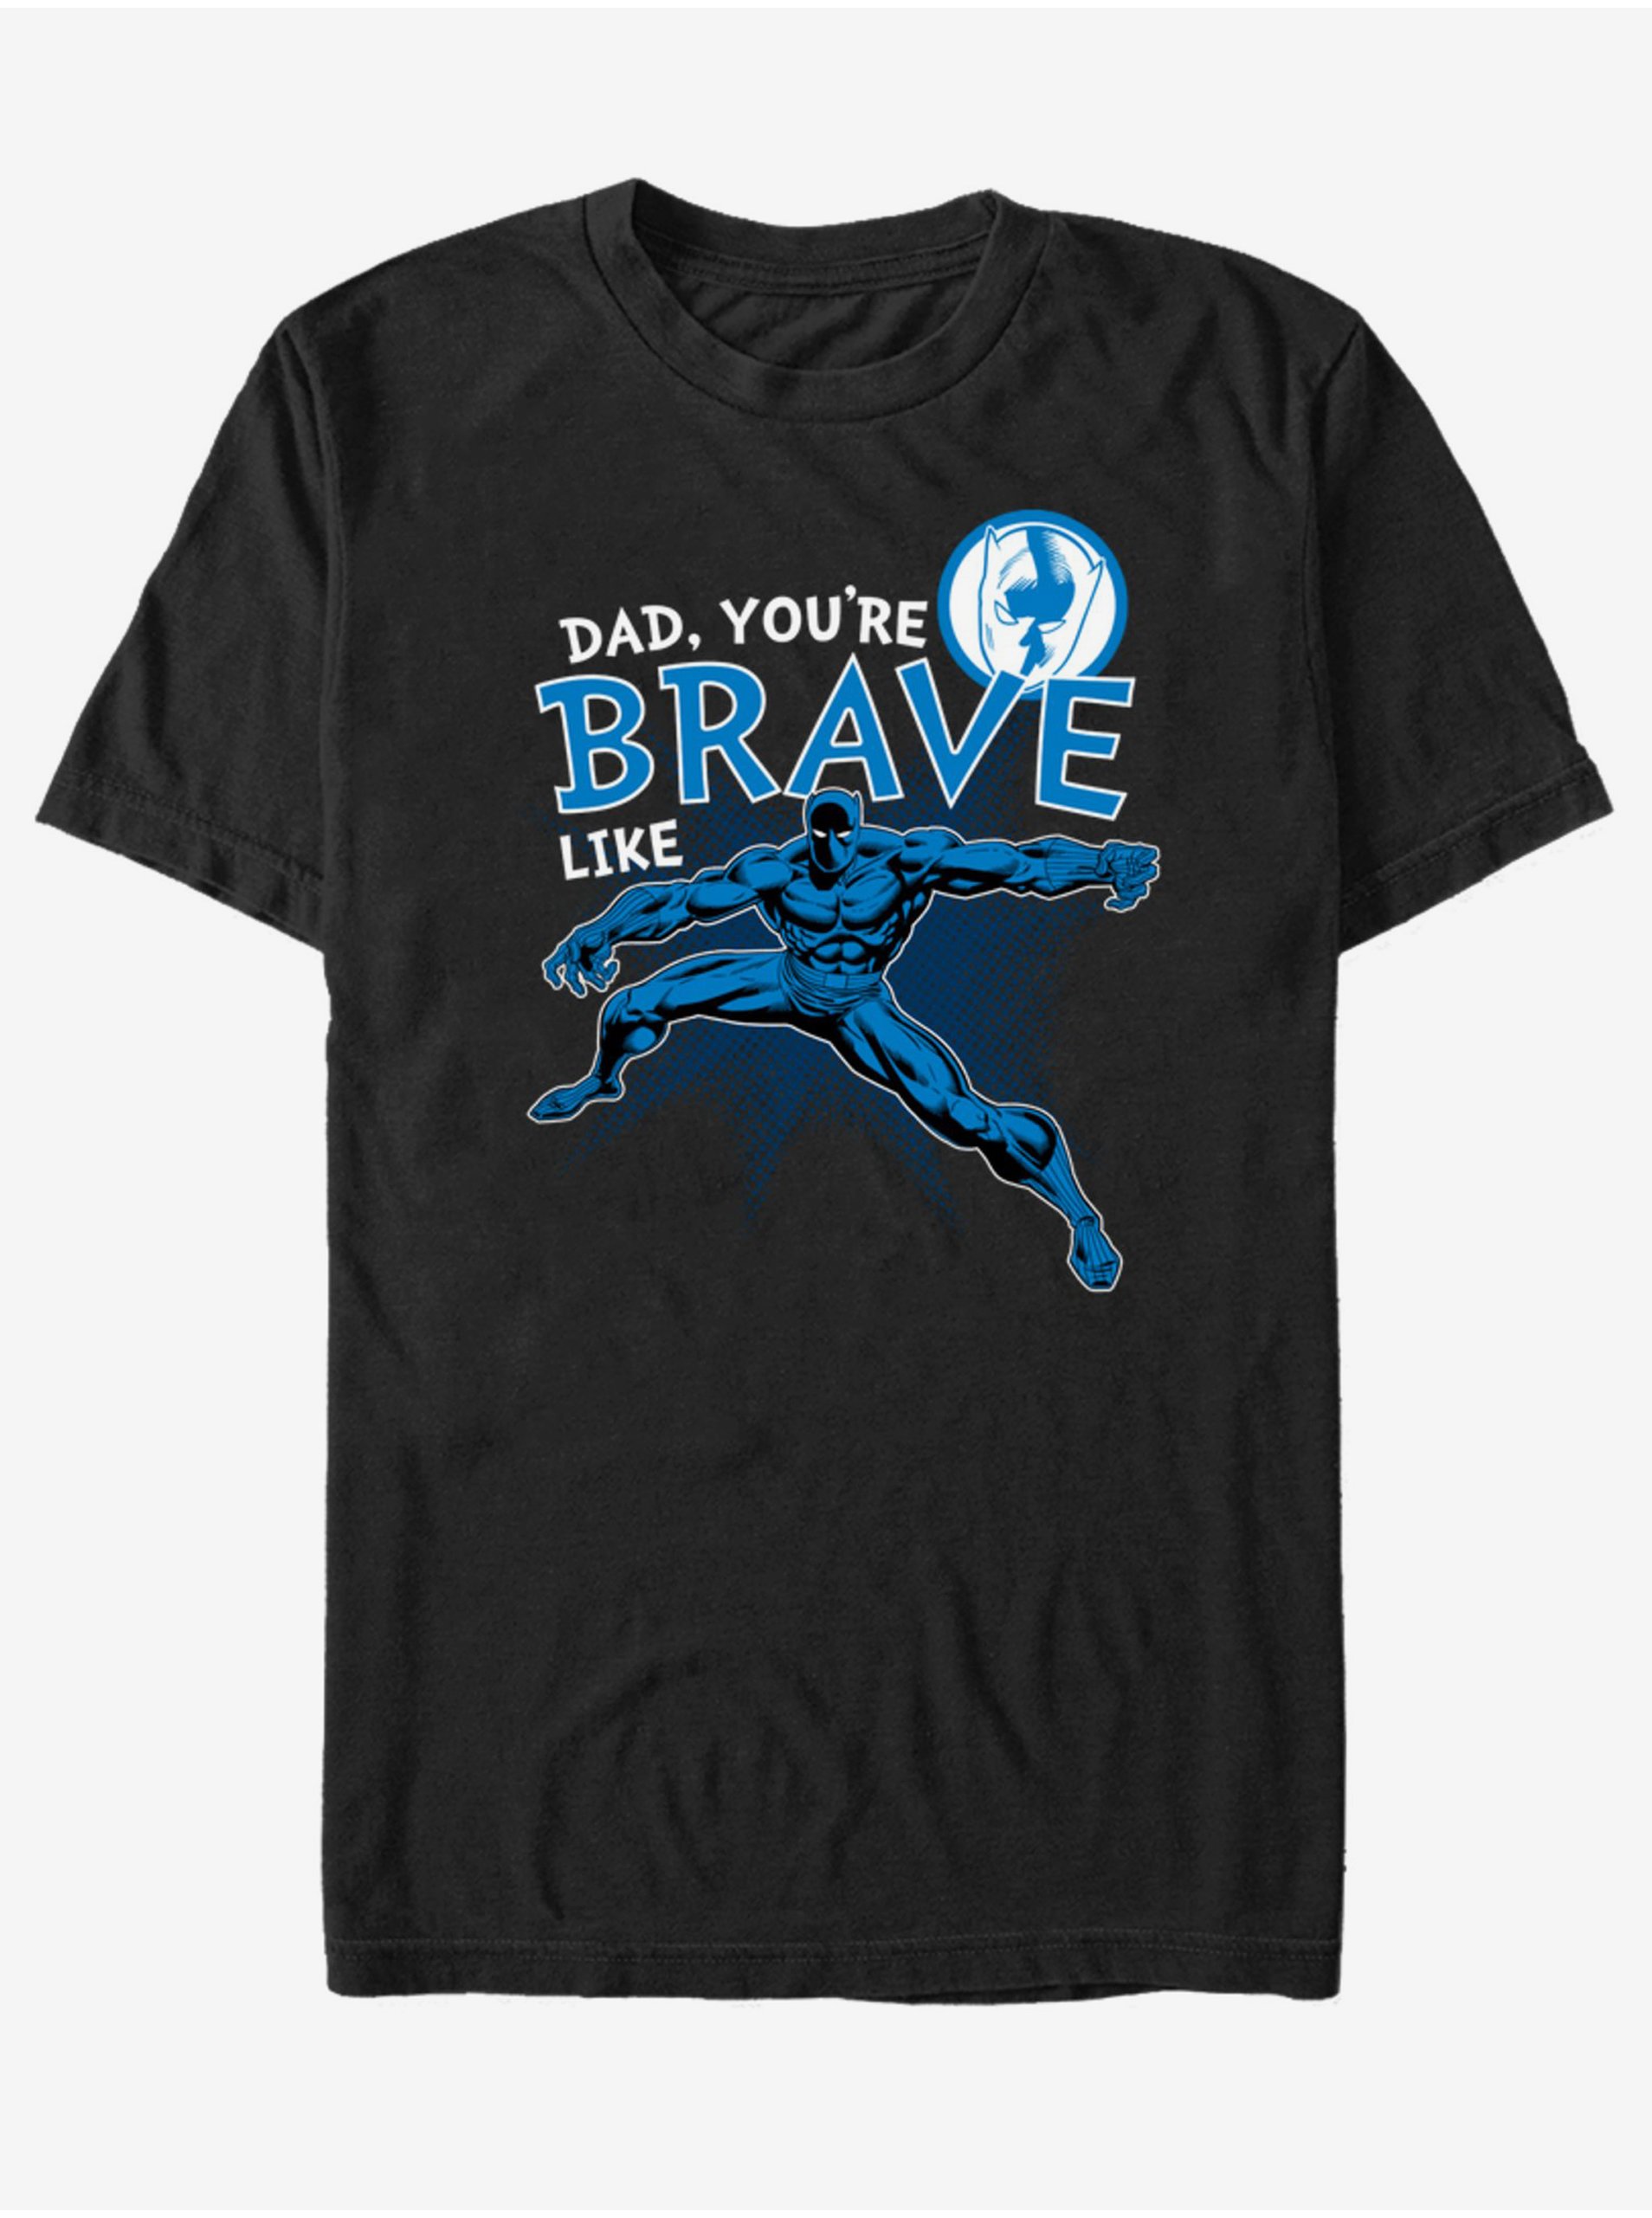 Lacno Černé unisex tričko ZOOT.Fan Marvel Brave Like Dad